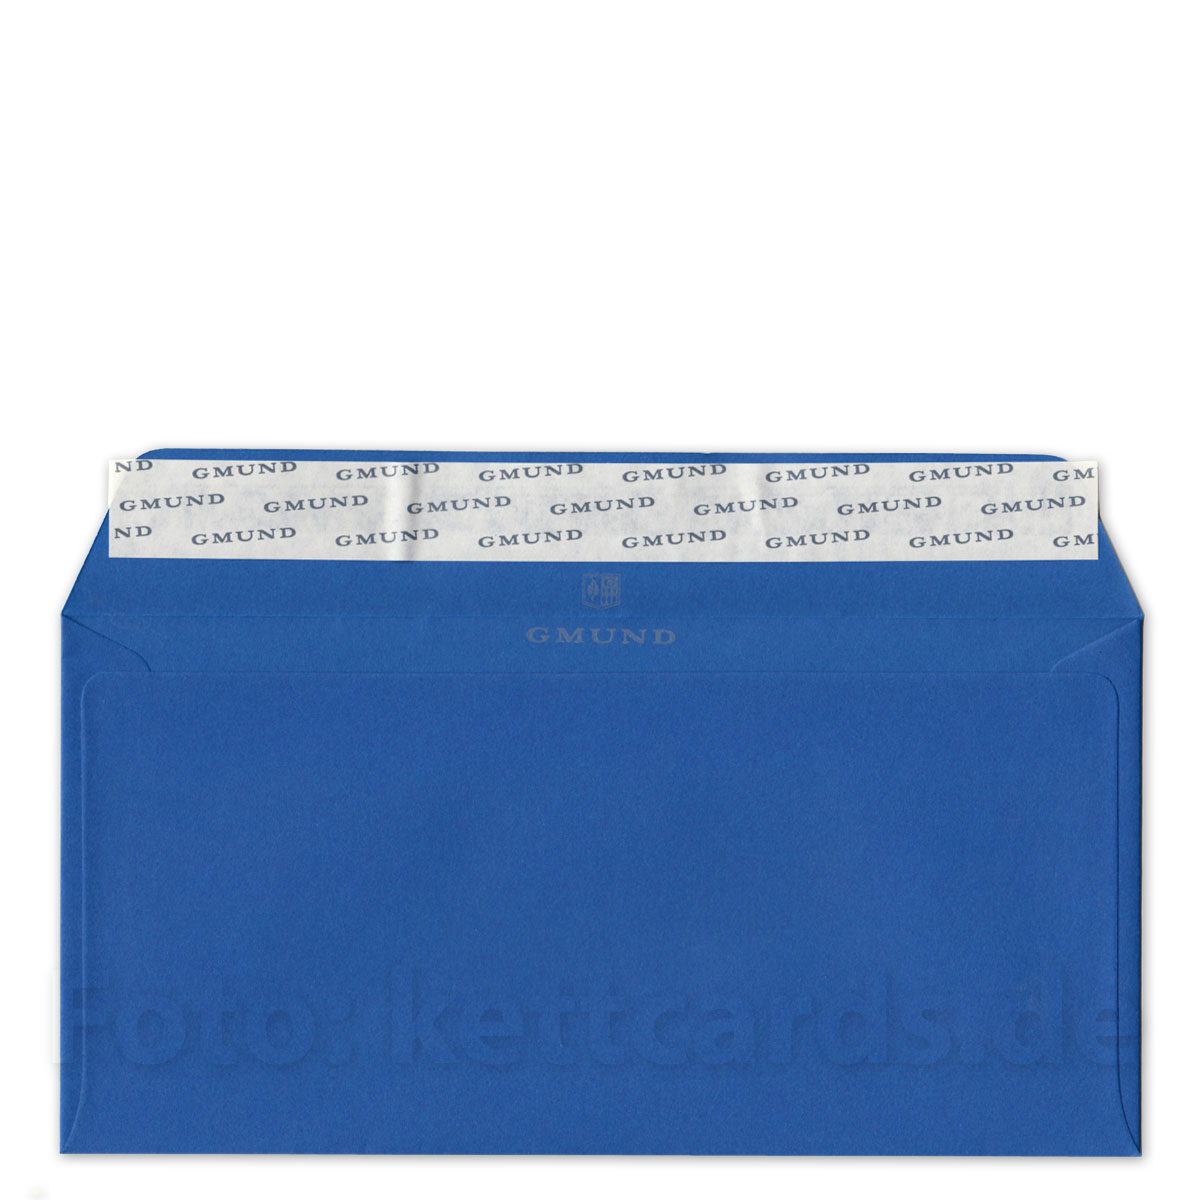 DIN lang, blaue Umschläge, GmundColors Nr.55, Farbton: in etwa HKS 42, bei Pantone: zwischen 2933U und 2954U